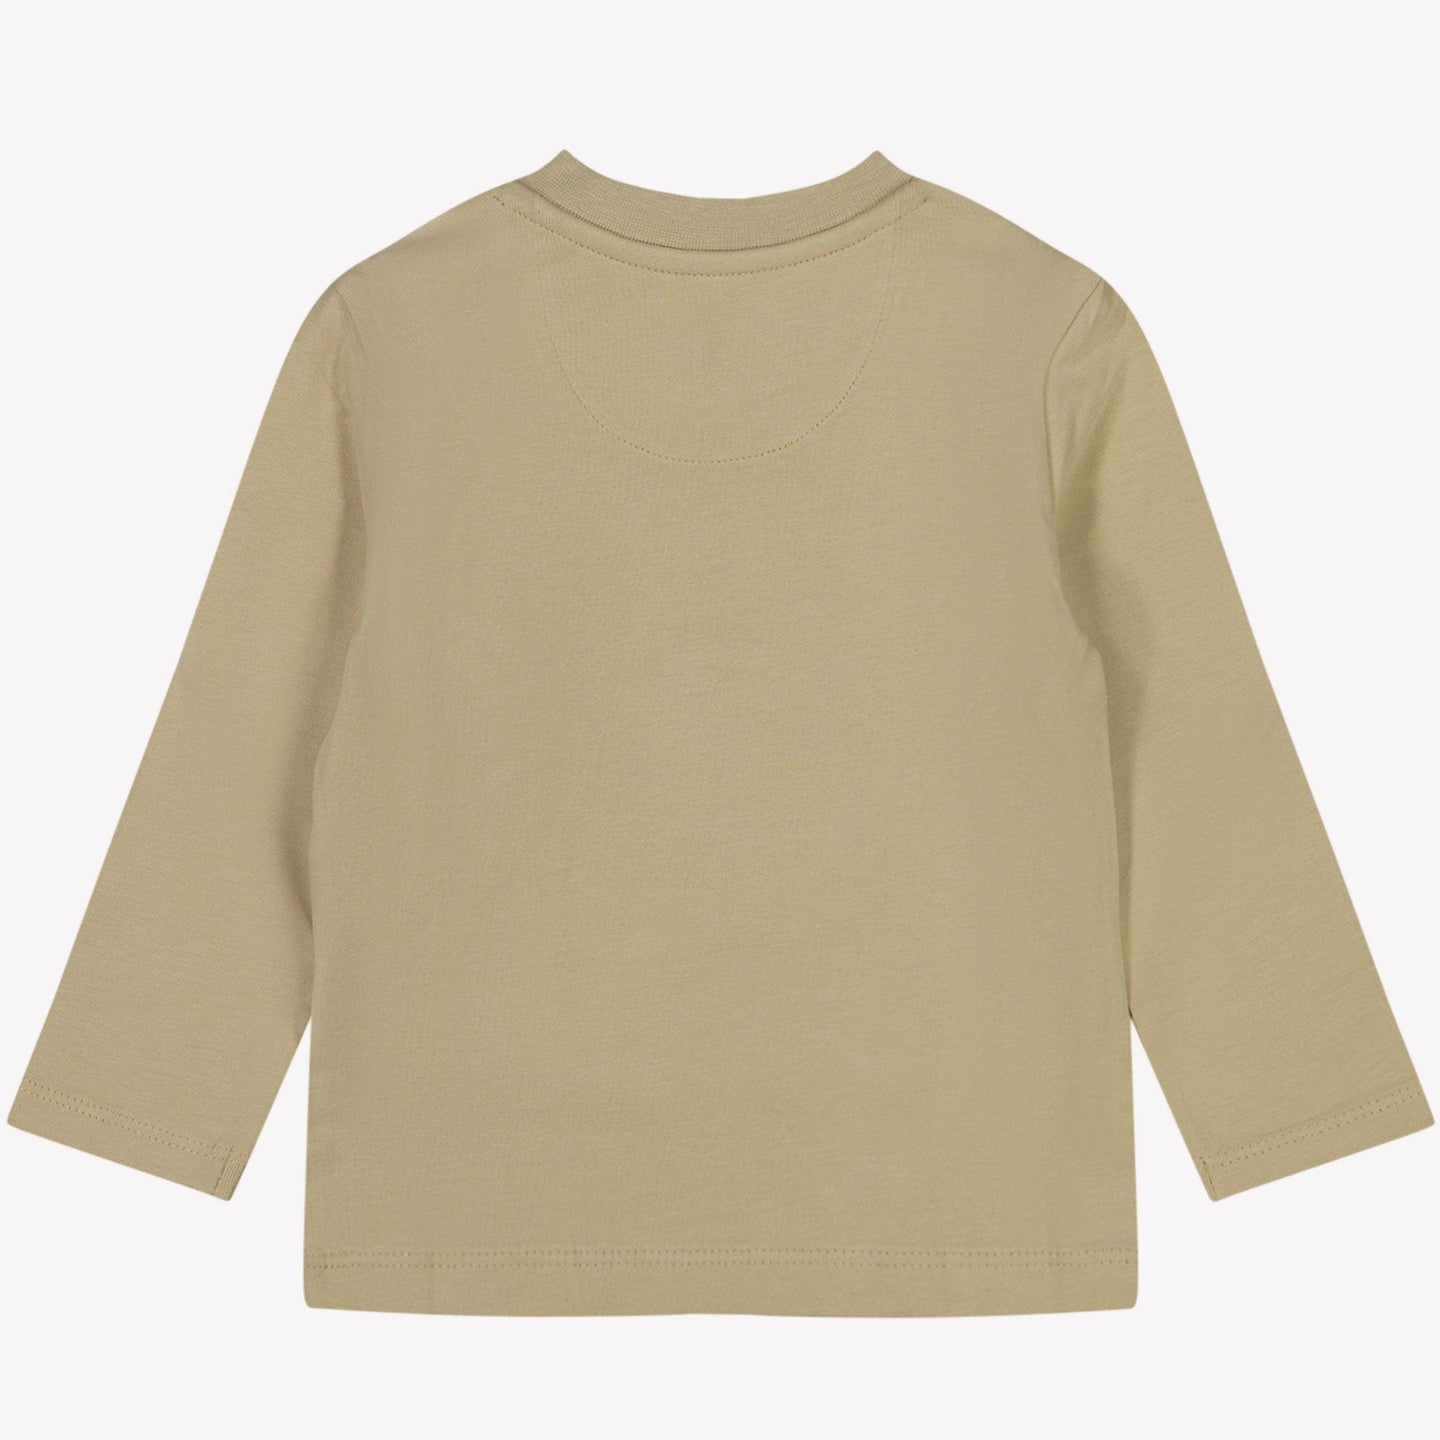 Calvin Klein Baby Jongens T-shirt Beige 68